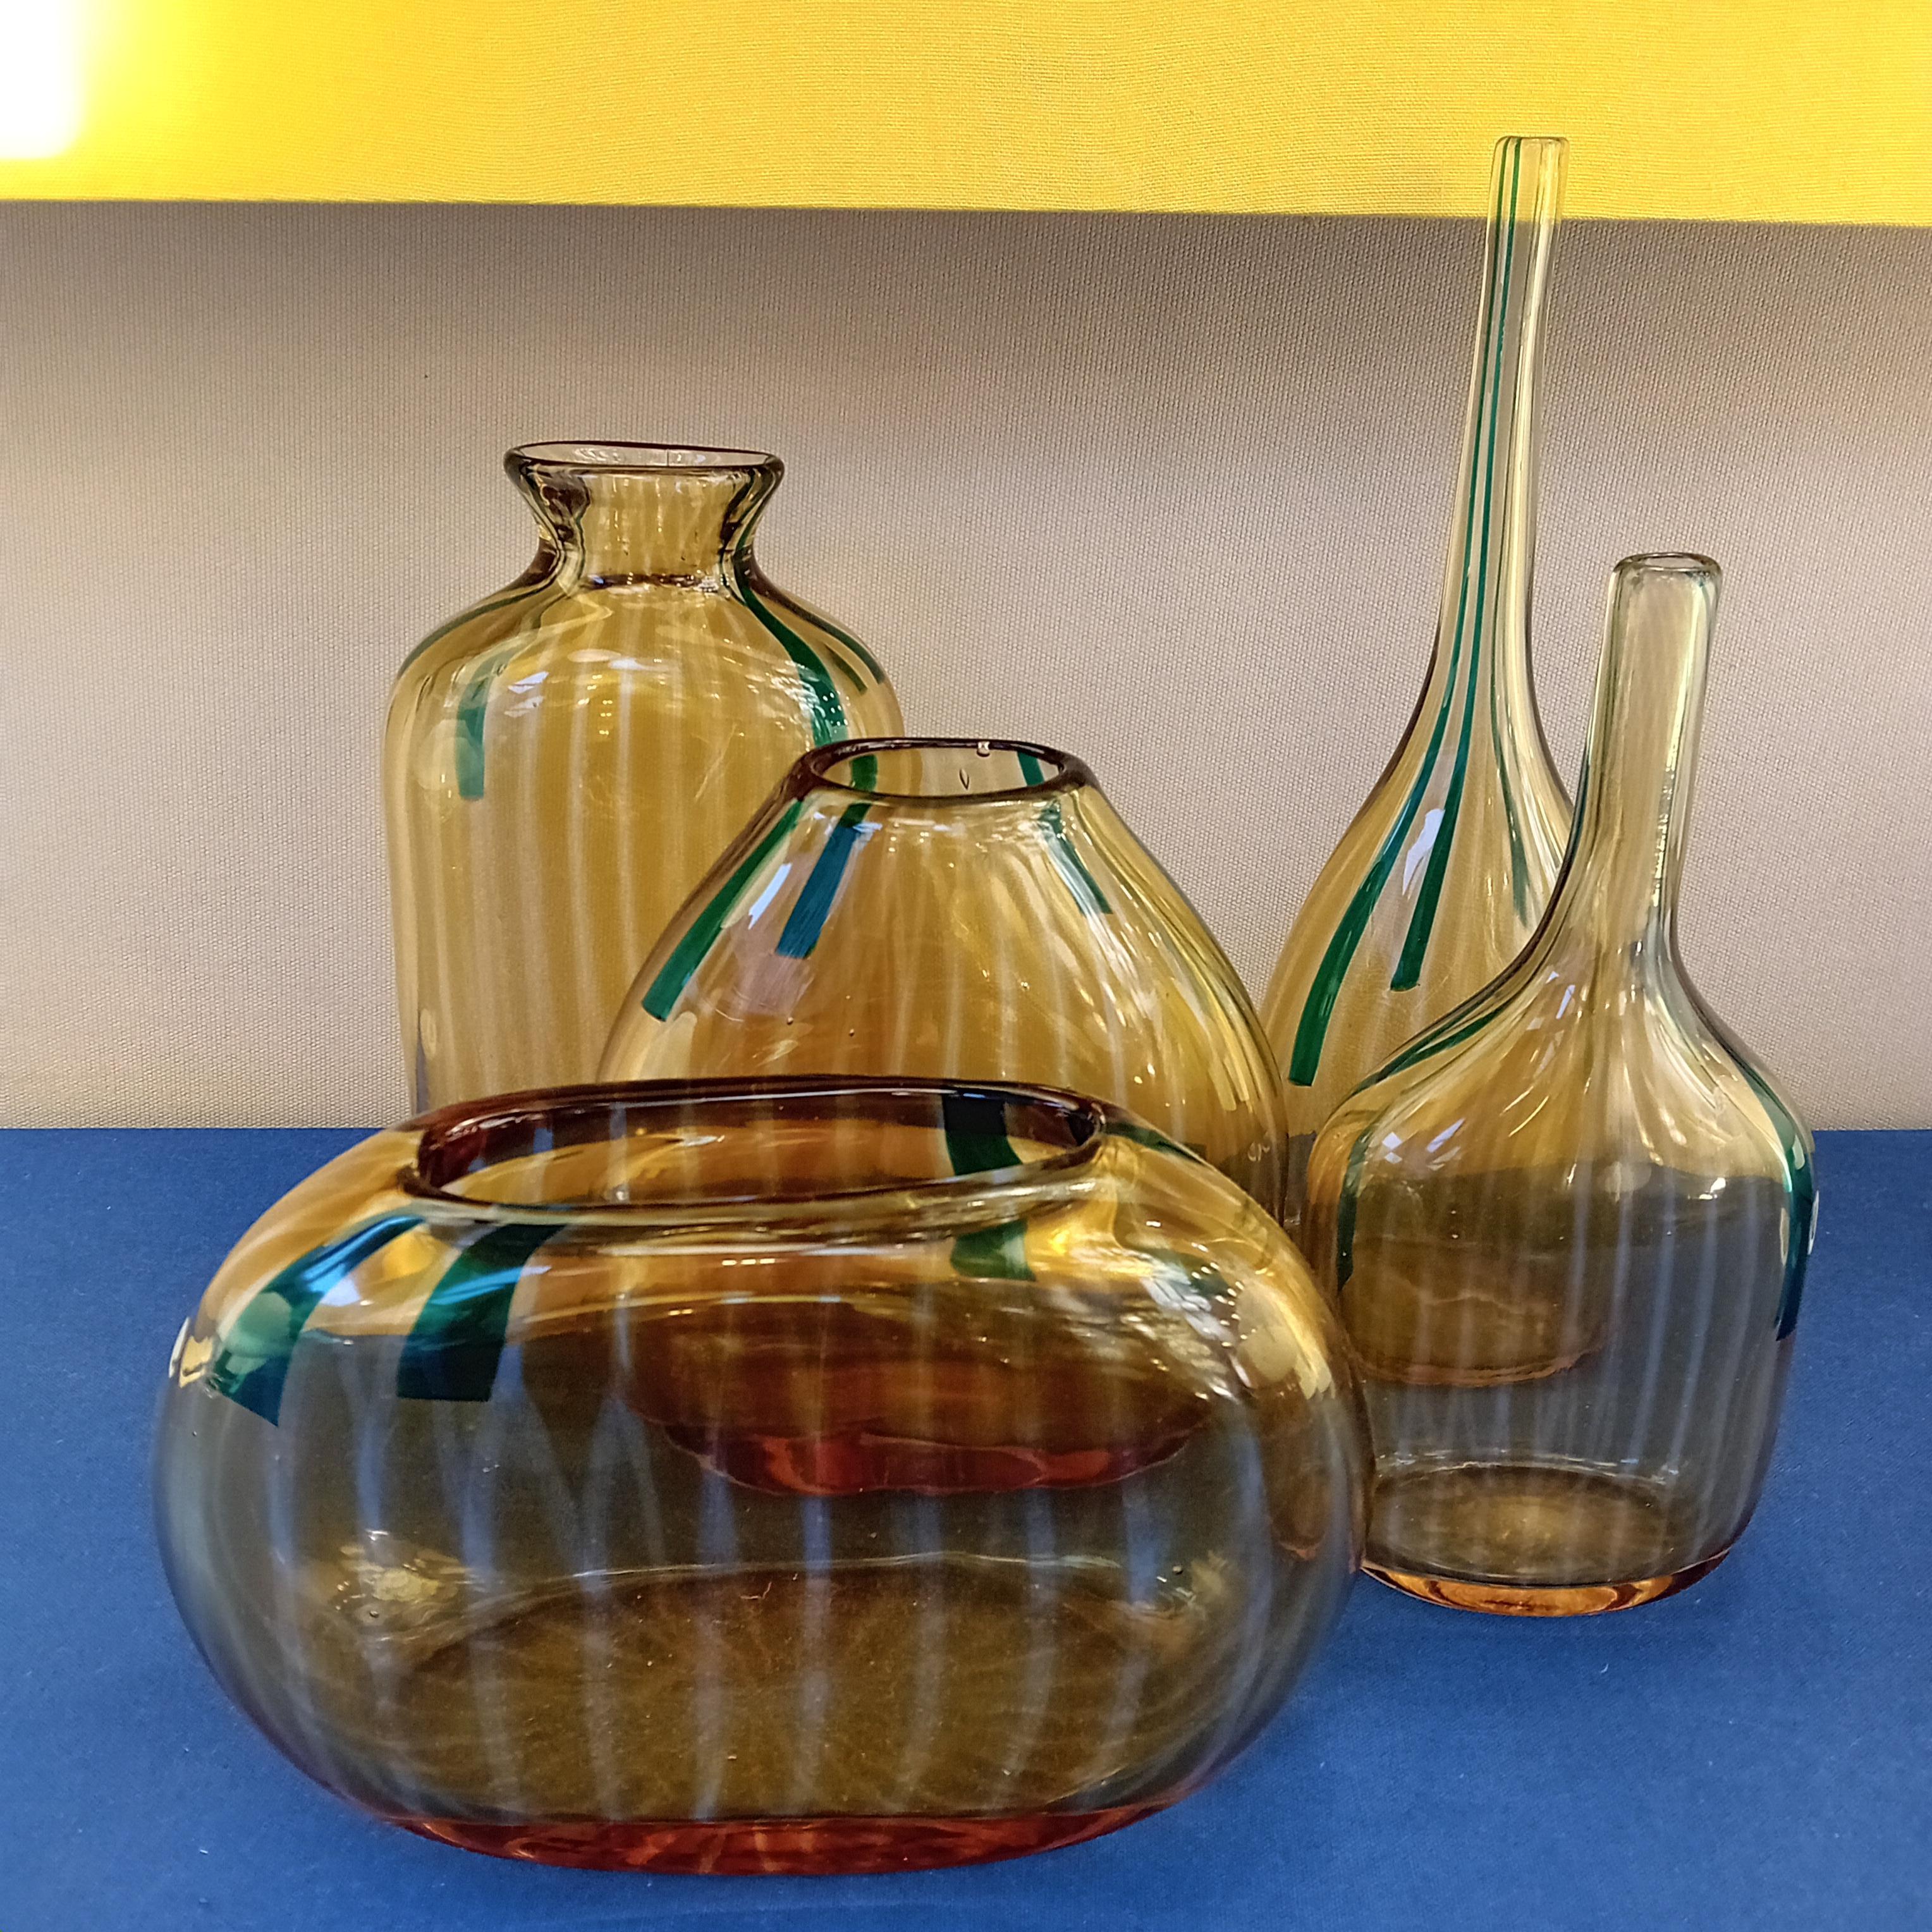 Dieses Set aus fünf Vasen wurde 1963 von Sergio Asti entworfen und auf der XXXII. Biennale von Venedig vorgestellt. Die Serie heißt Clio und besteht aus gekerbten Vasen aus verschmolzenen Glasstäben.
Farbe: orange, transluzid und antikgrün

Biblio :